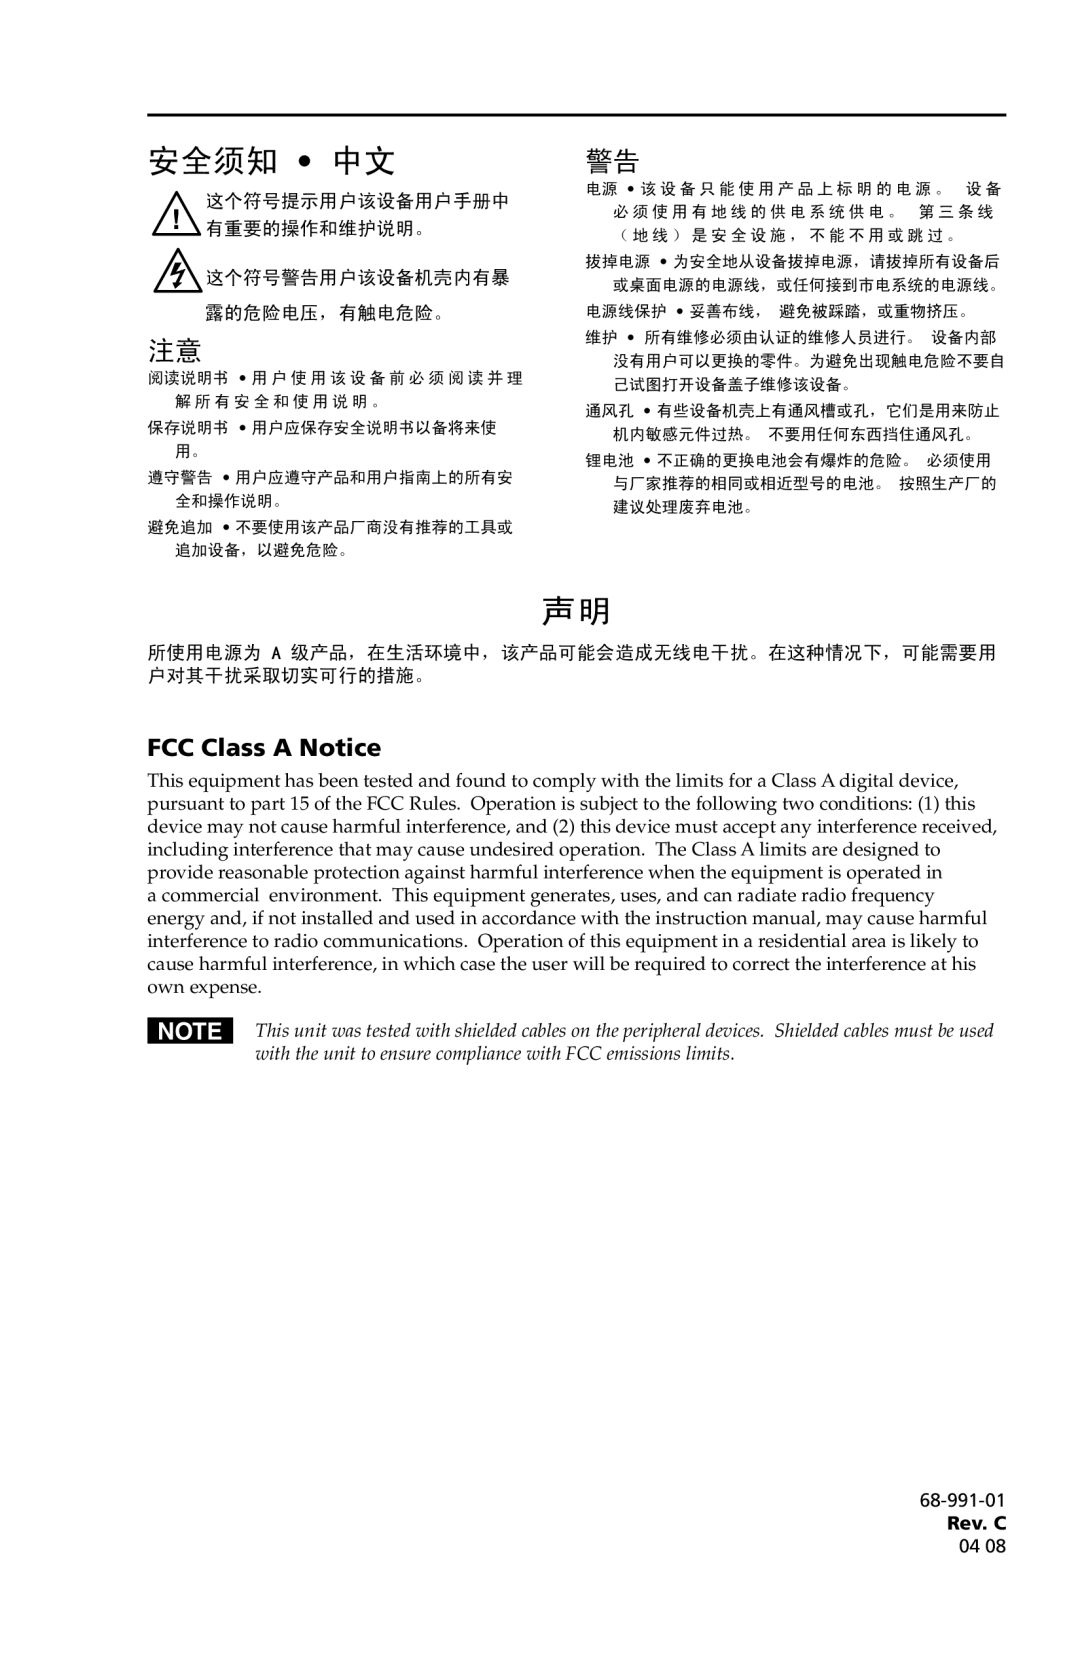 Extron electronic P/2 DA4xi s 安全须知 中文, FCC Class A Notice, 这个符号提示用户该设备用户手册中 有重要的操作和维护说明。 这个符号警告用户该设备机壳内有暴, 露的危险电压，有触电危险。 